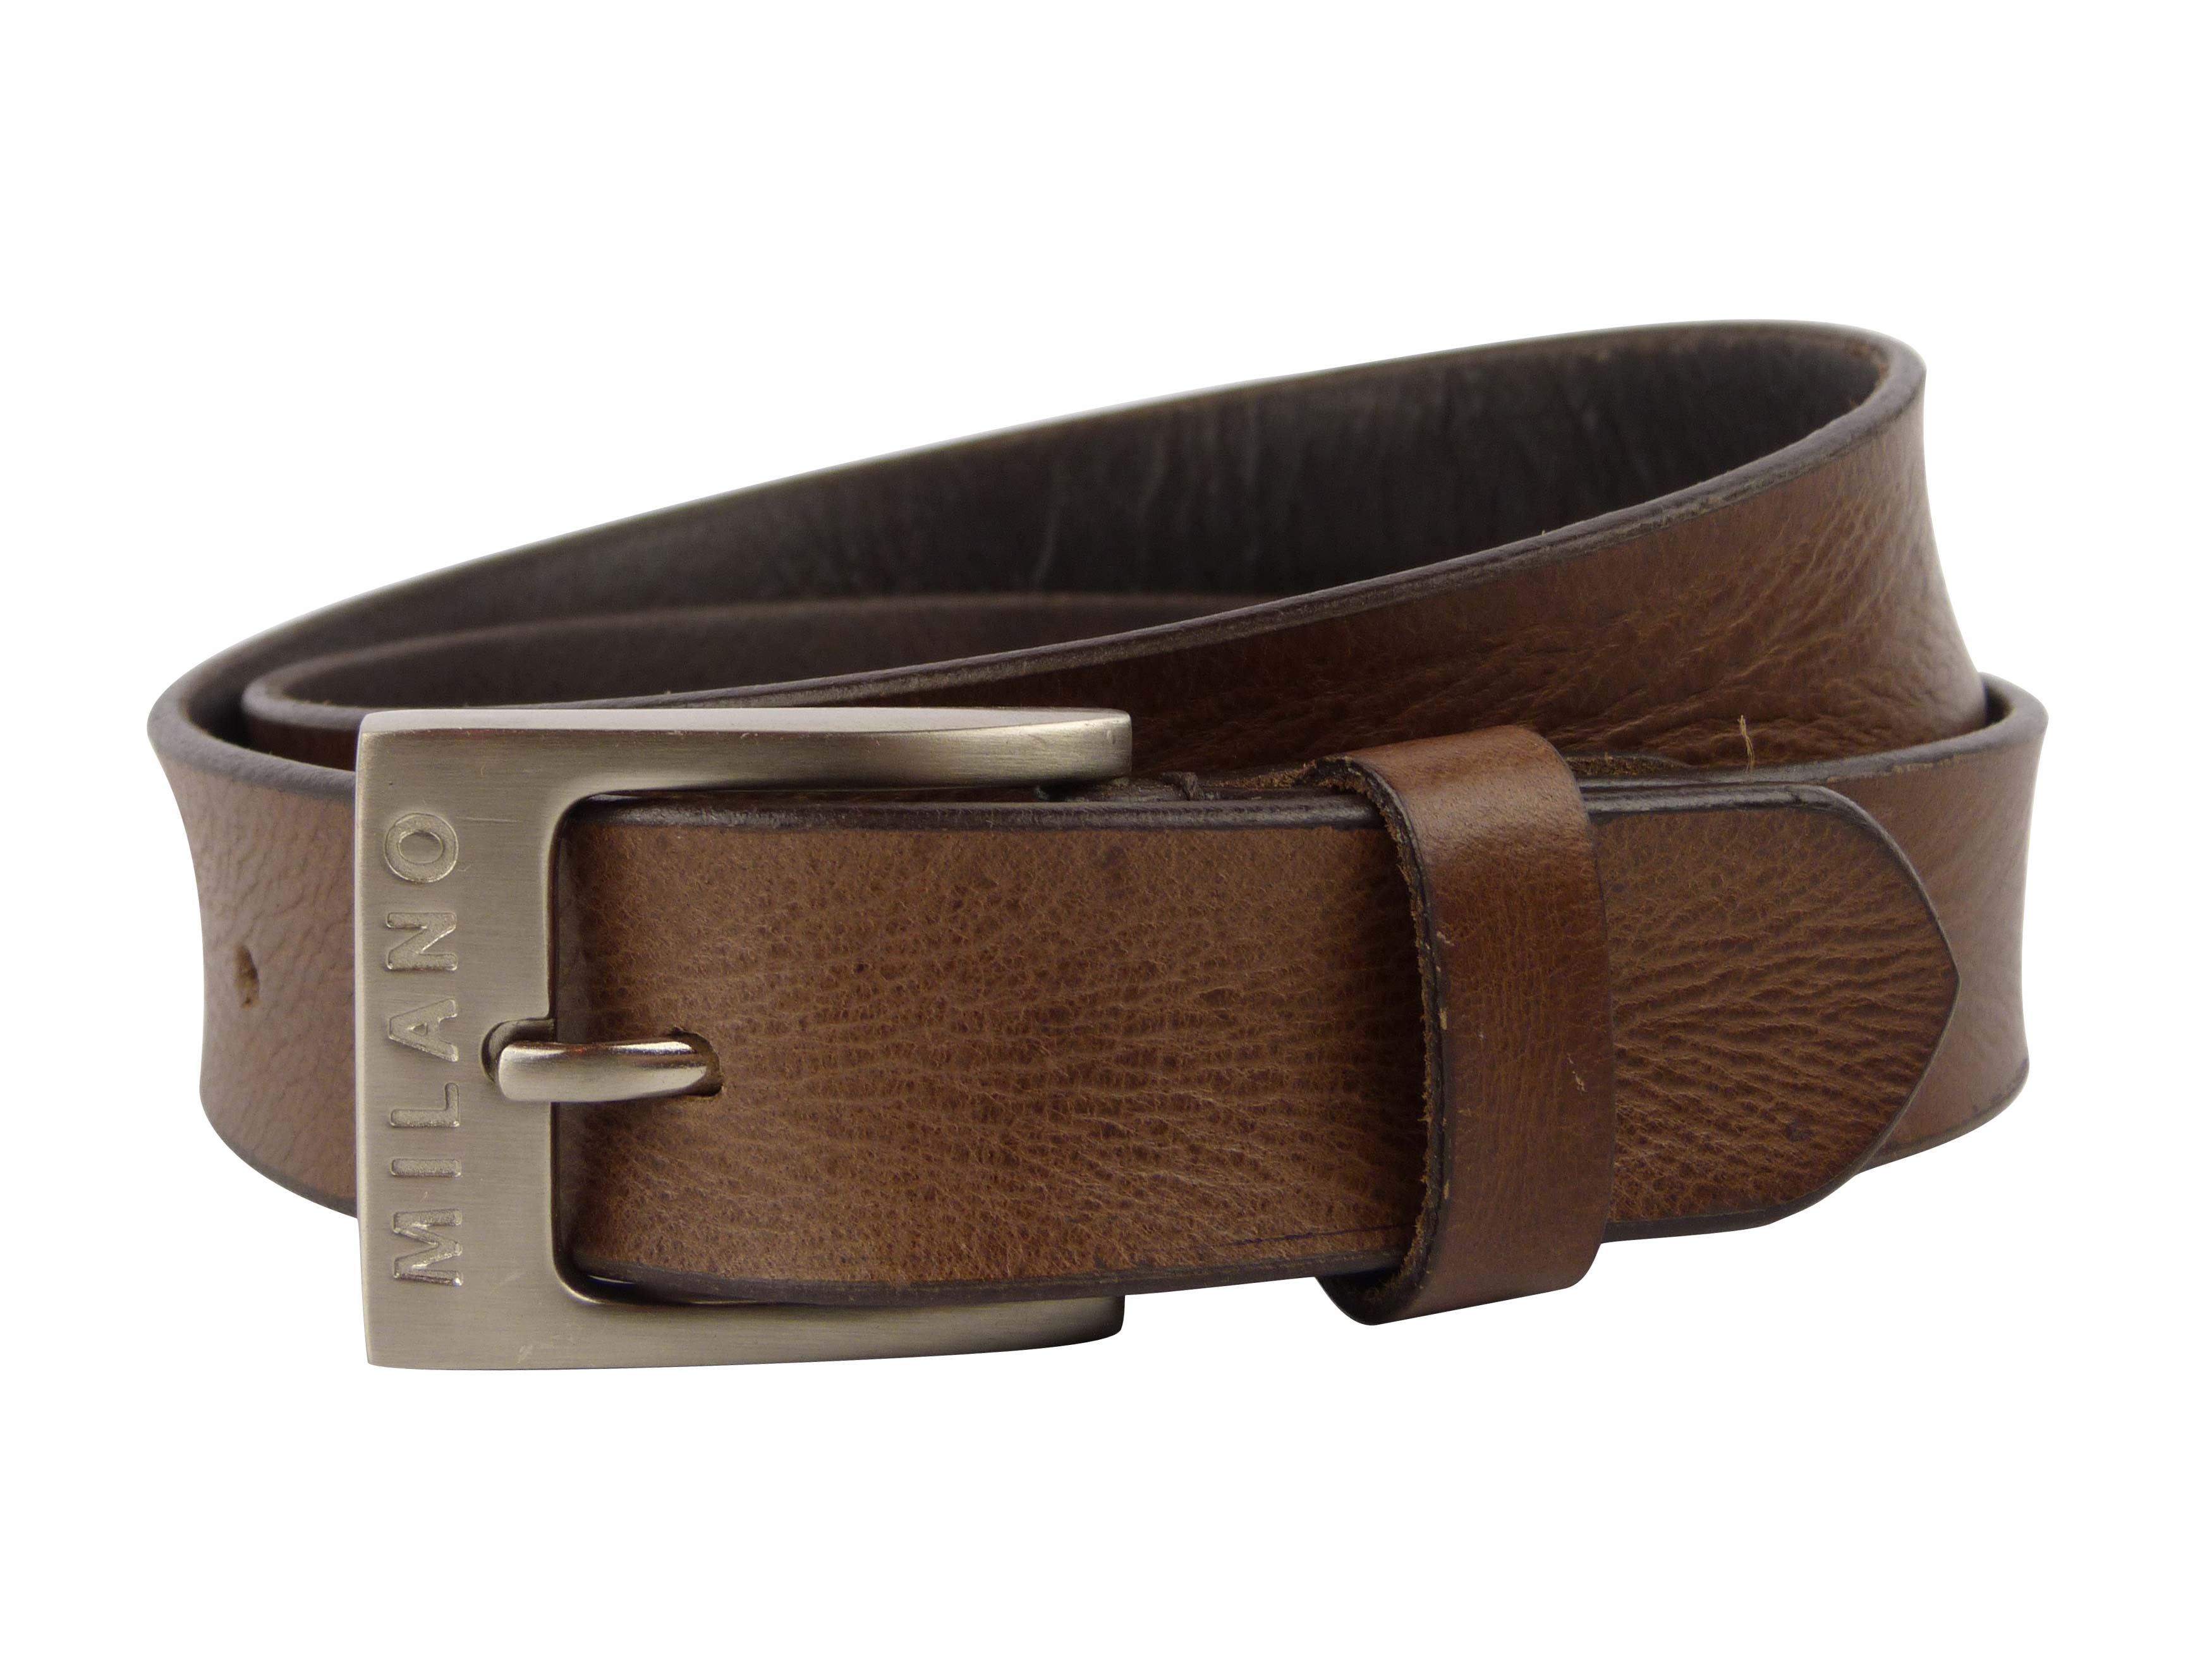 Cinturón de cuero real para hombre de 1,25" de ancho todas las tallas de Milano hasta 48 (marrón) - Imagen 1 de 1